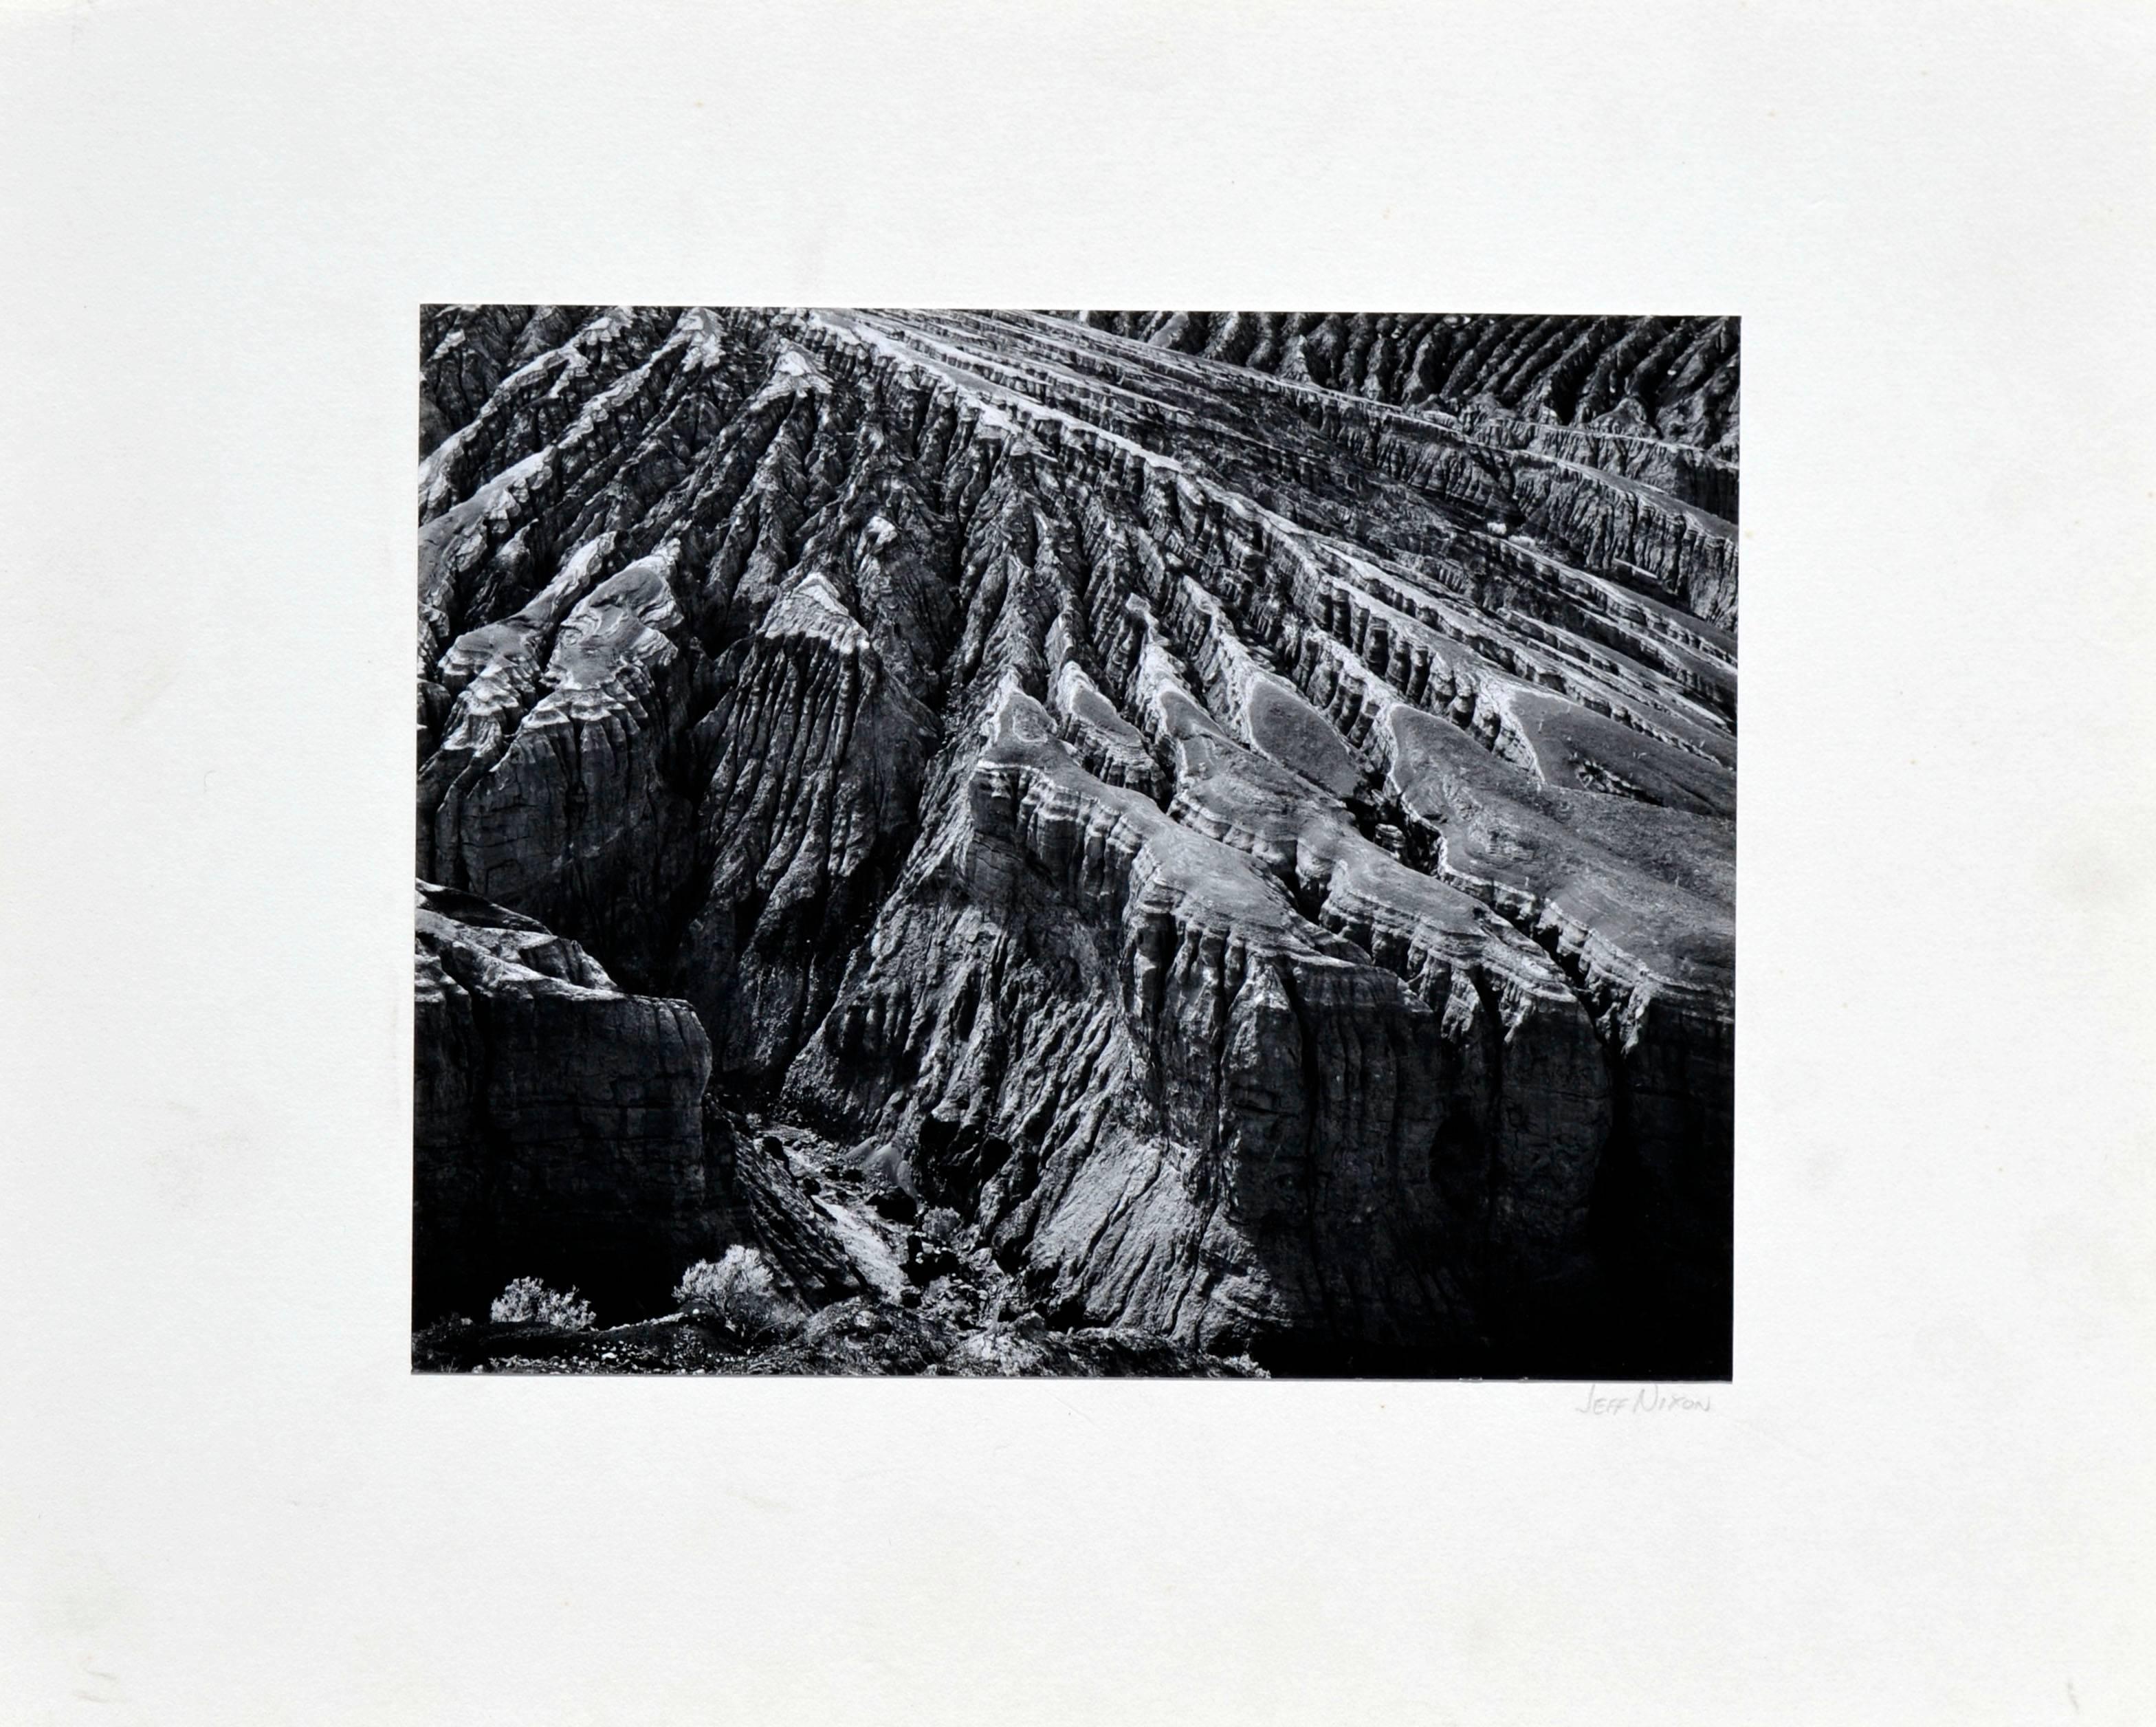 Jeff Nixon Landscape Photograph – "Yeow! Point, Death Valley“ – Abstrakte Schwarz-Weiß-Landschaftsfotografie